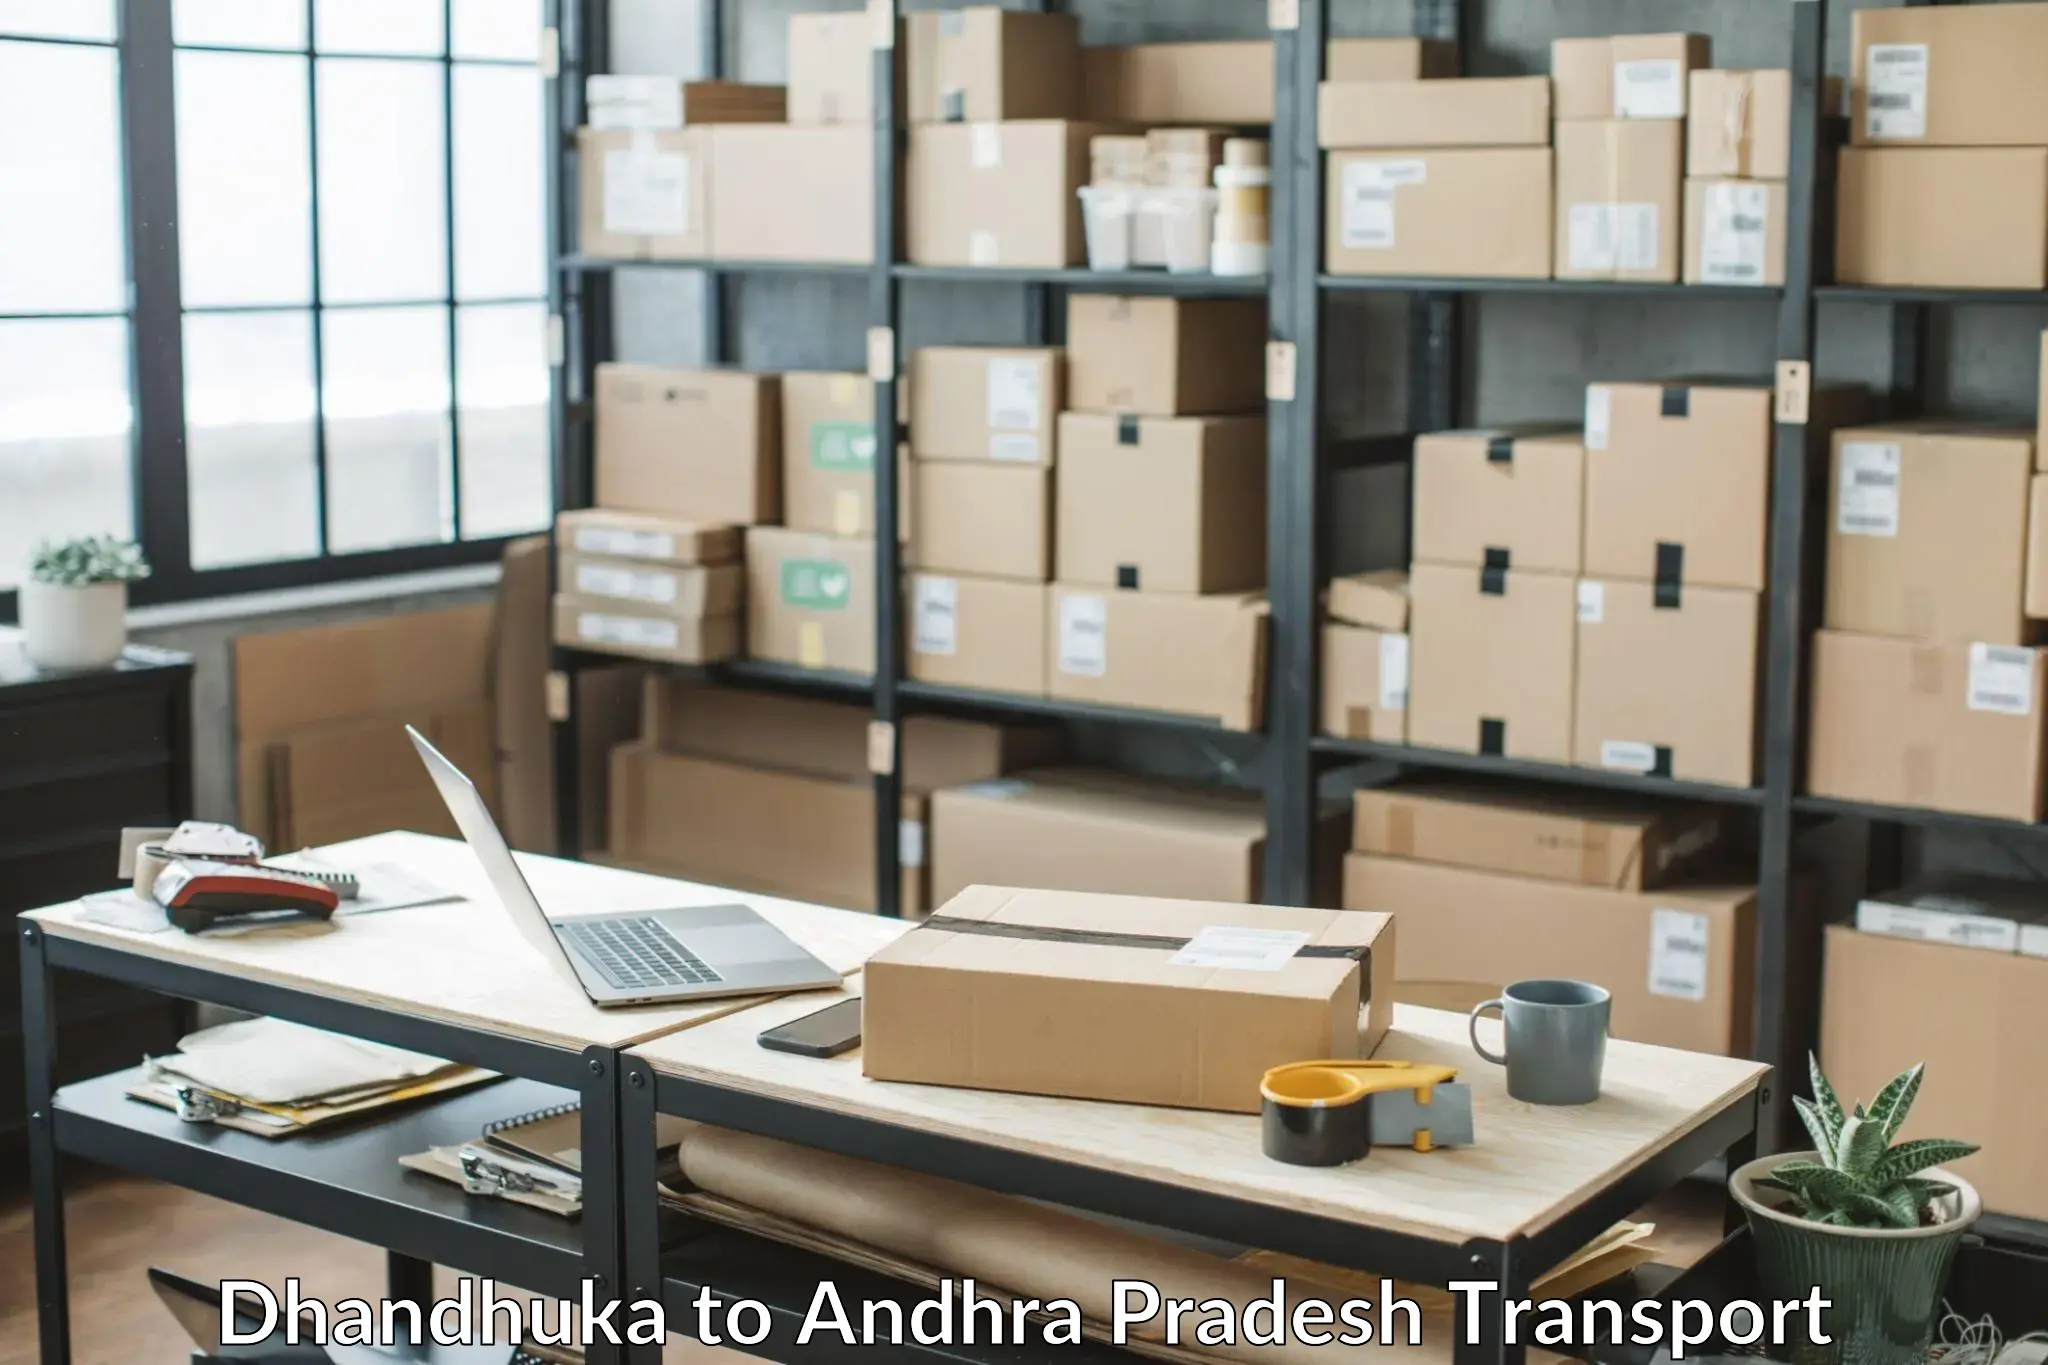 Truck transport companies in India Dhandhuka to Naupada